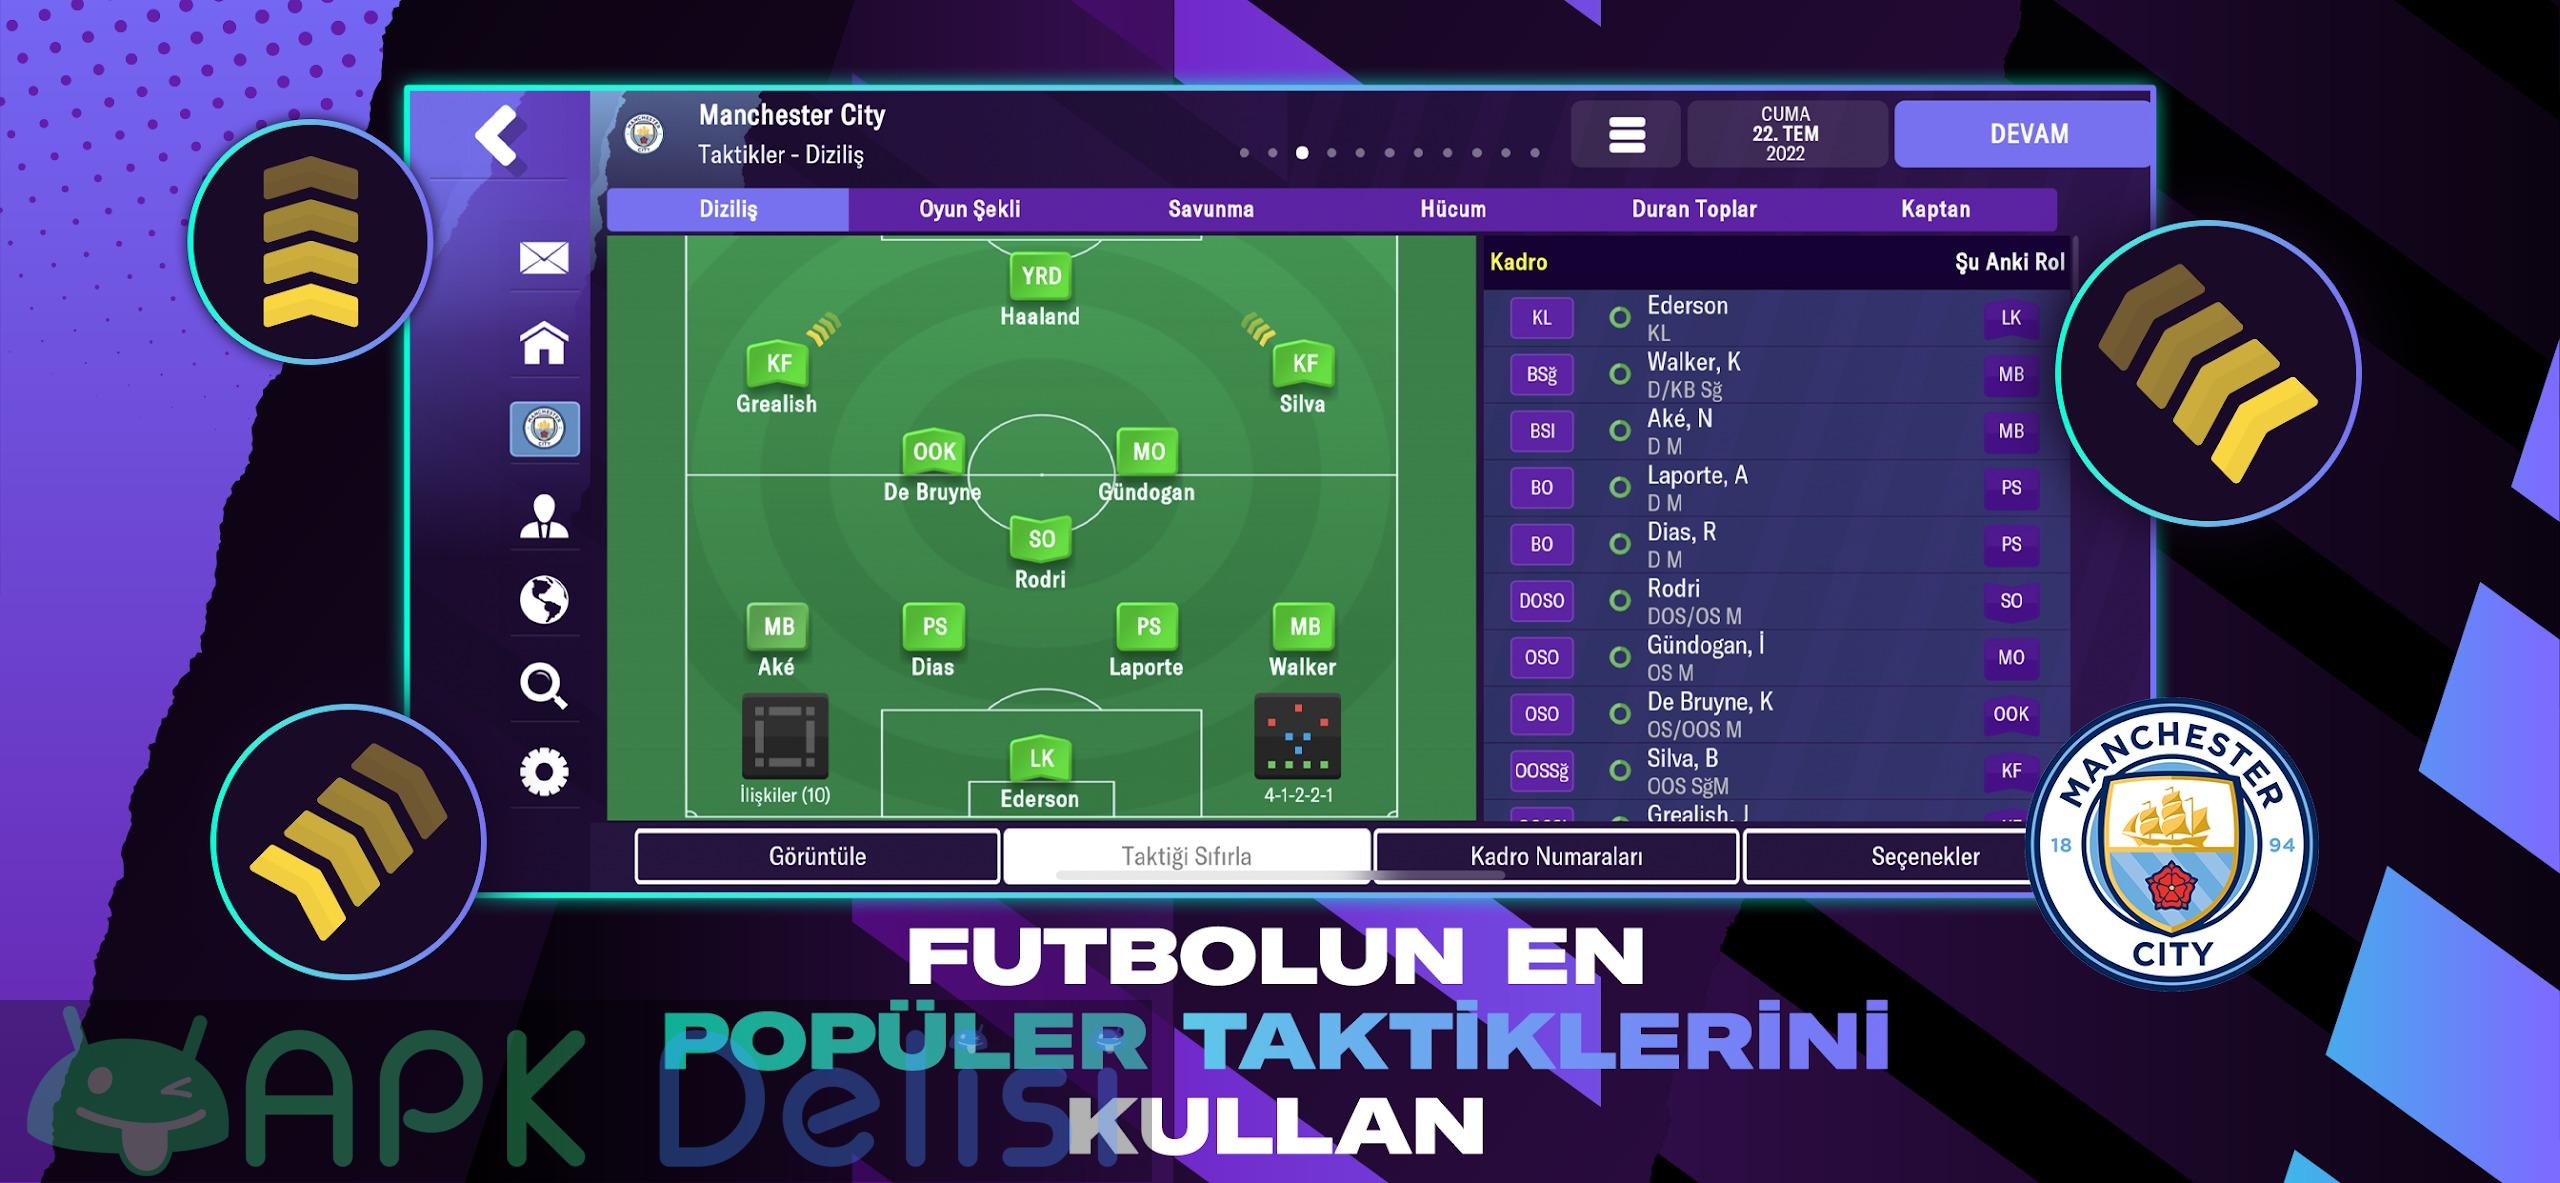 Football Manager 2023 Mobile v14.4.0 FULL APK — TAM SÜRÜM 4